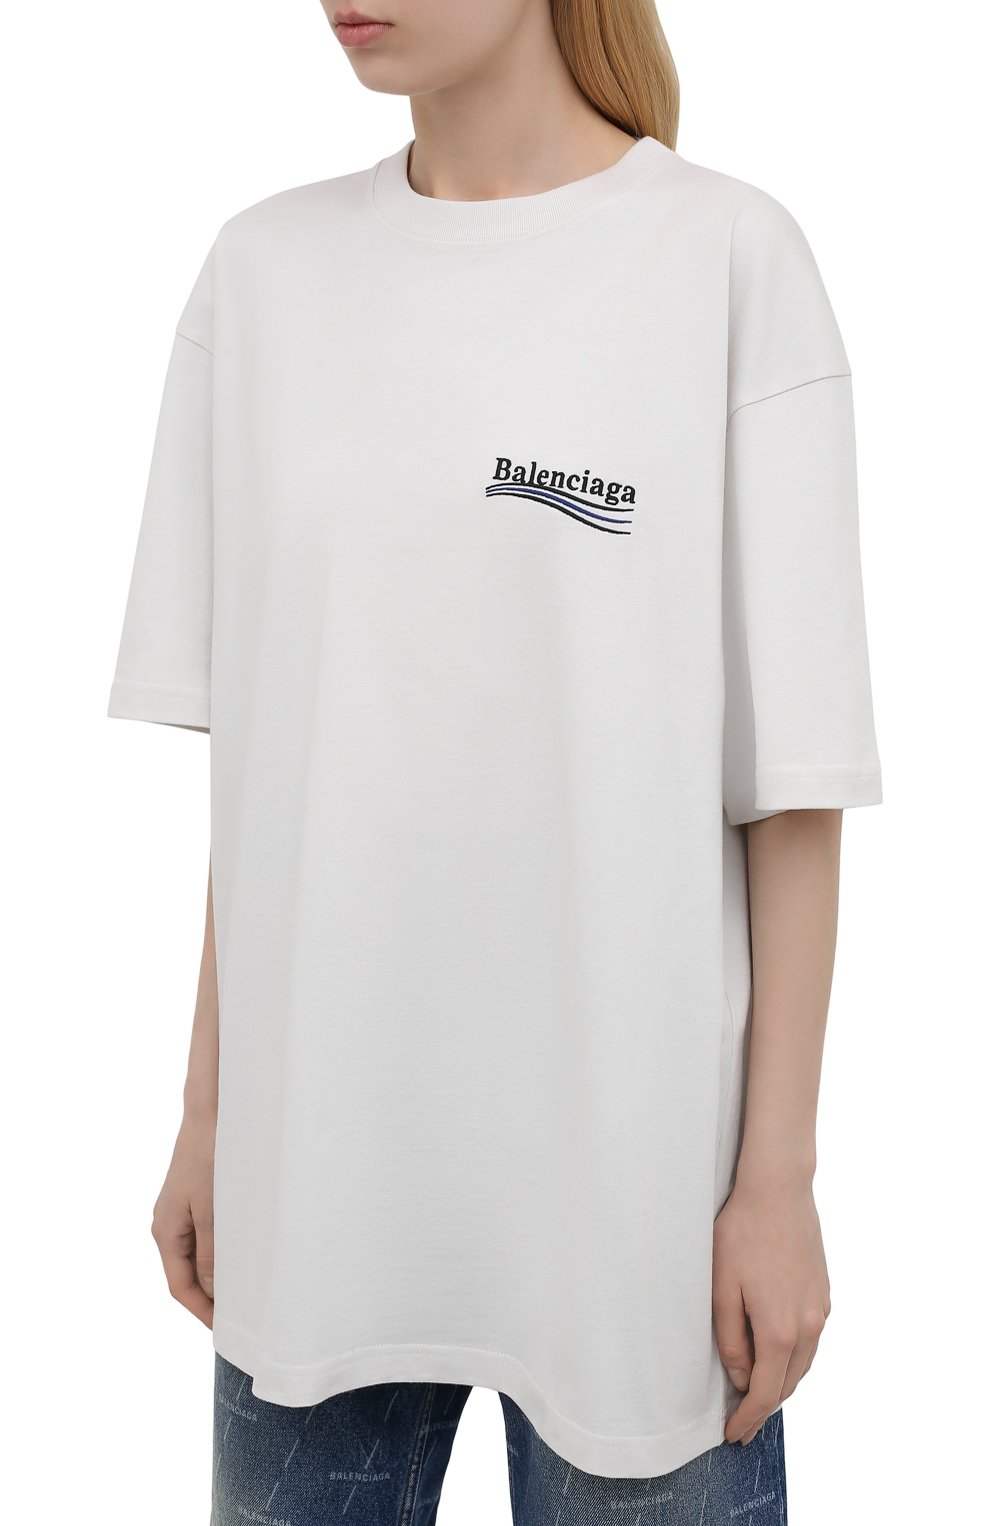 Баленсиага футболки женские